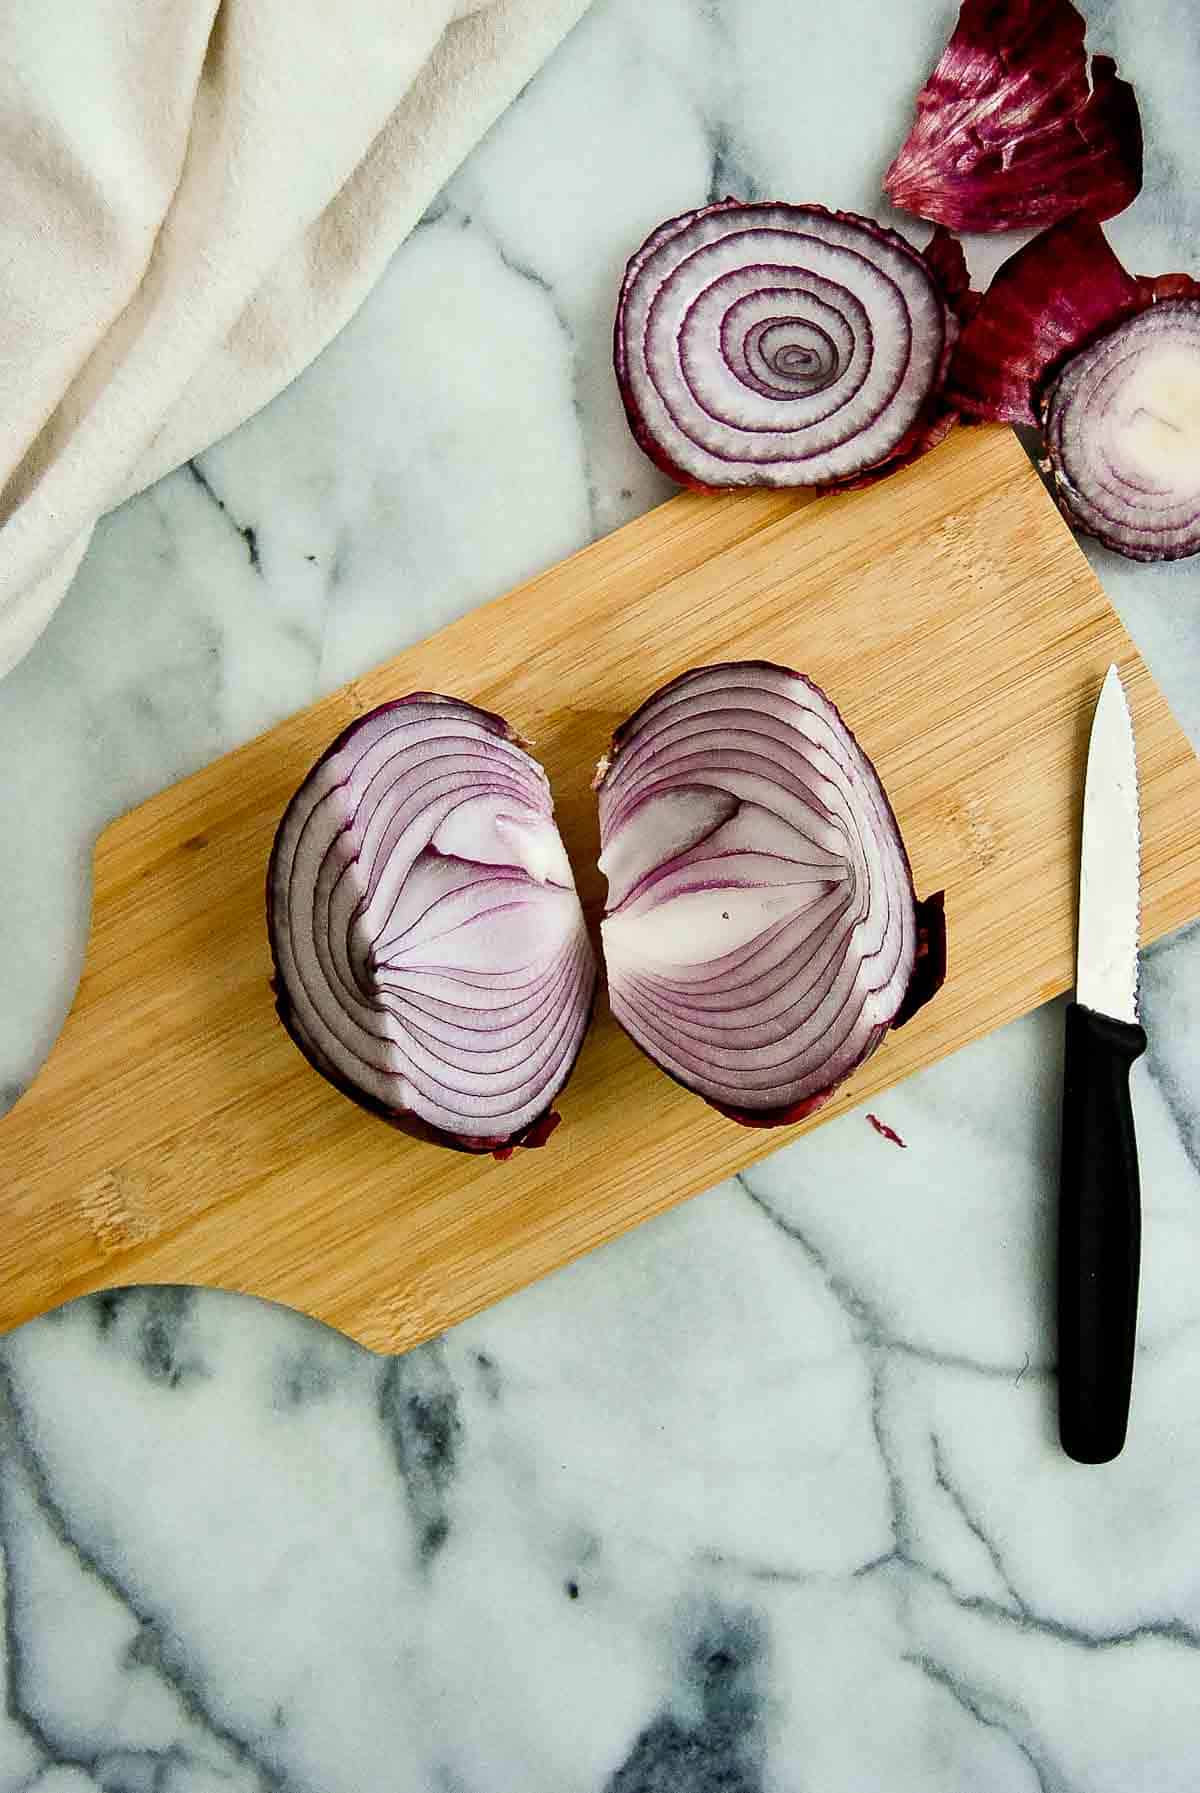 1 onion cut in half on cutting board.